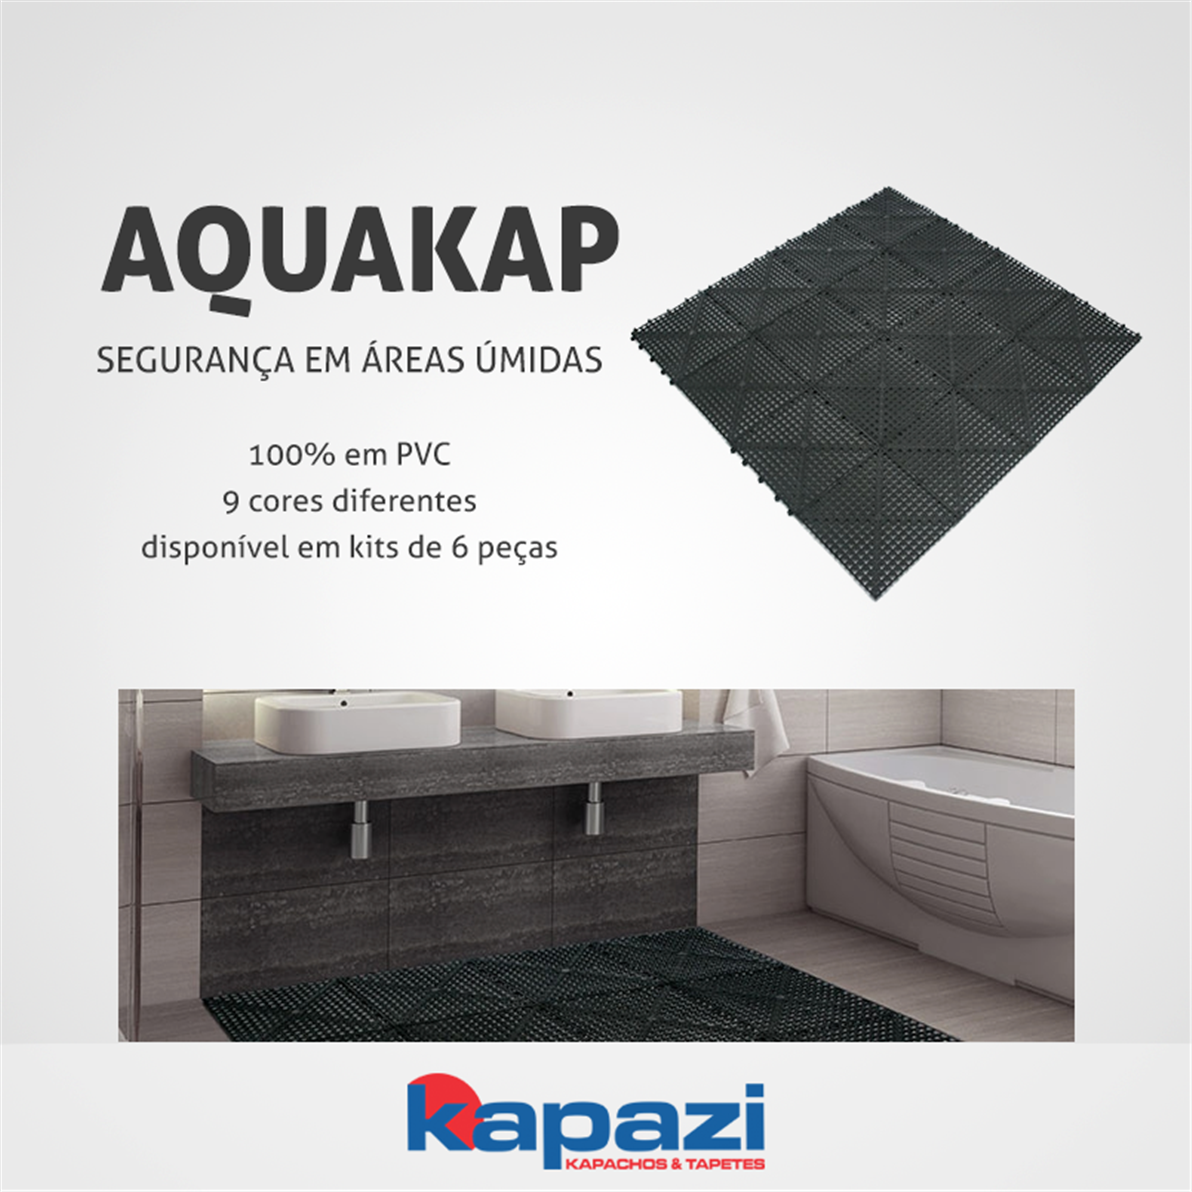 Aplicação de Acqua Kap para áreas úmidas. Ideal para piscinas. Além de higiênico, anti-fúngico, garante a segurança, evitando quedas por ser antiderrapante.